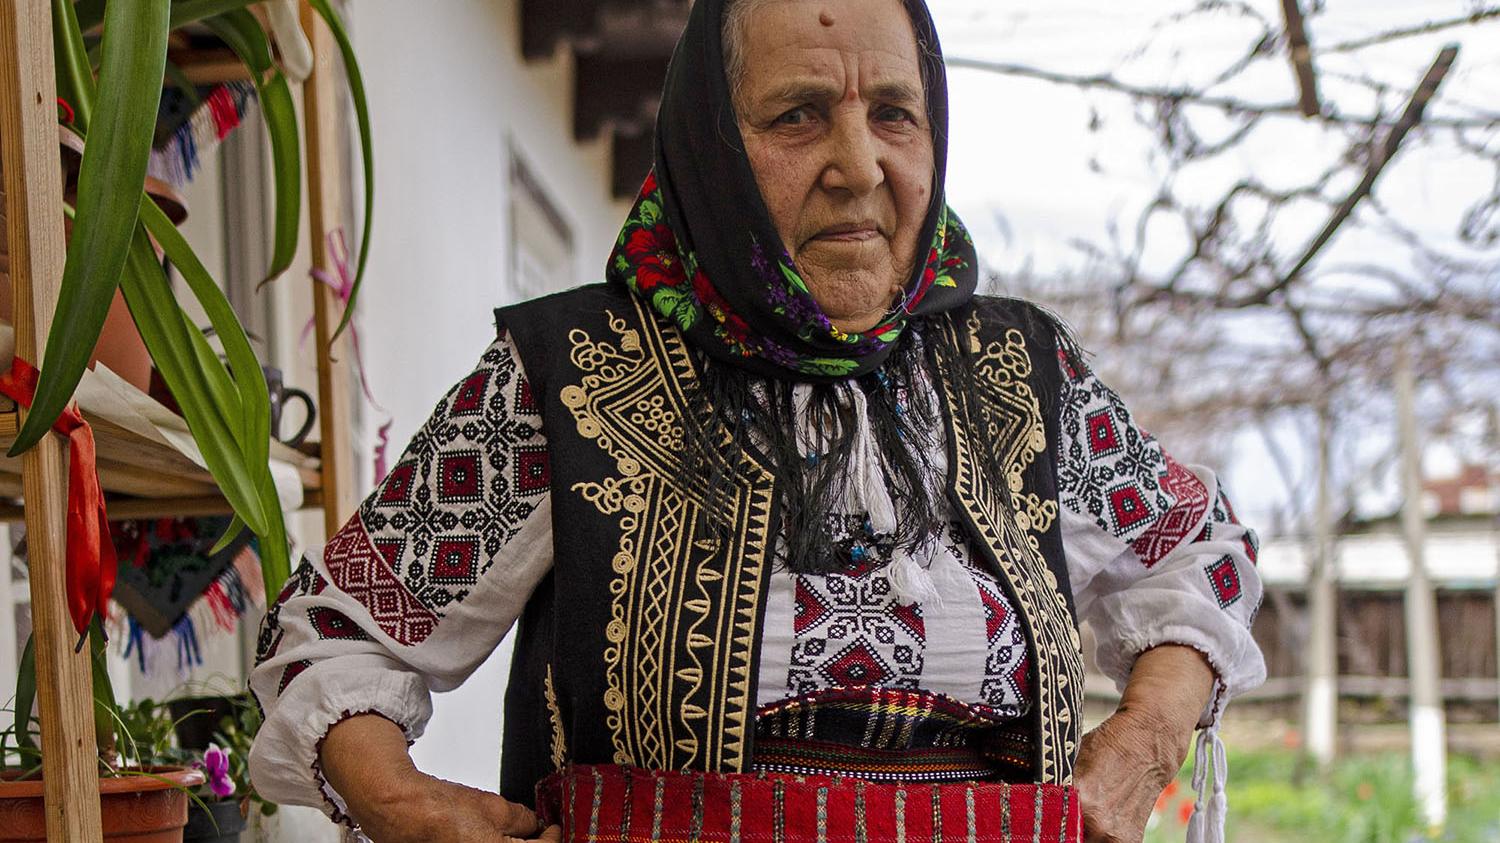 Romanian craftswoman